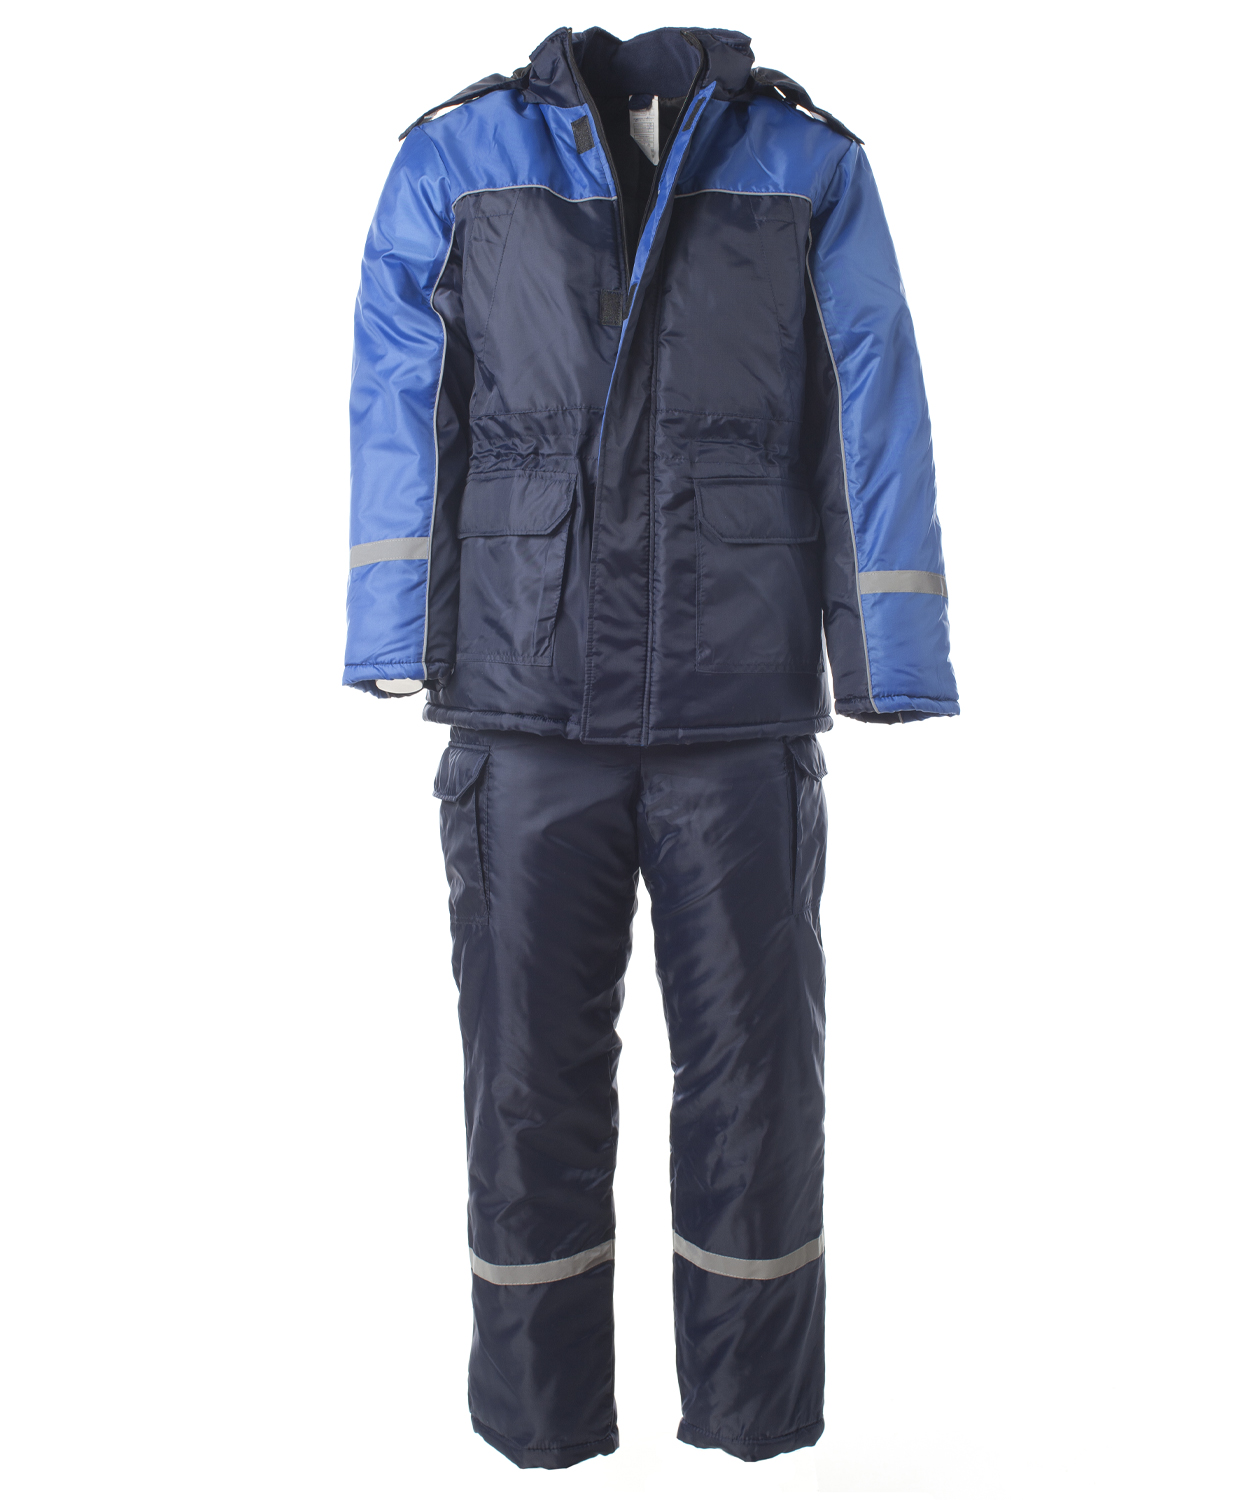 Зимний костюм "Эталон-БАЛТИКА" мужской, утепленный (куртка и п/к), цвет: тёмно-синий с васильковым